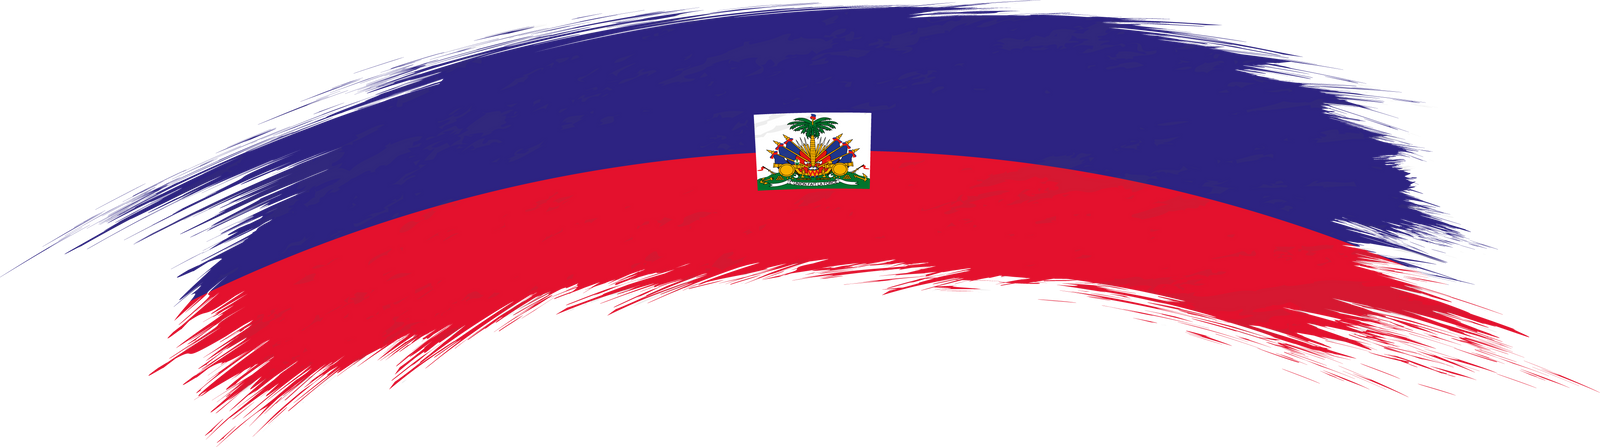 Flag of Haiti in rounded grunge brush stroke.